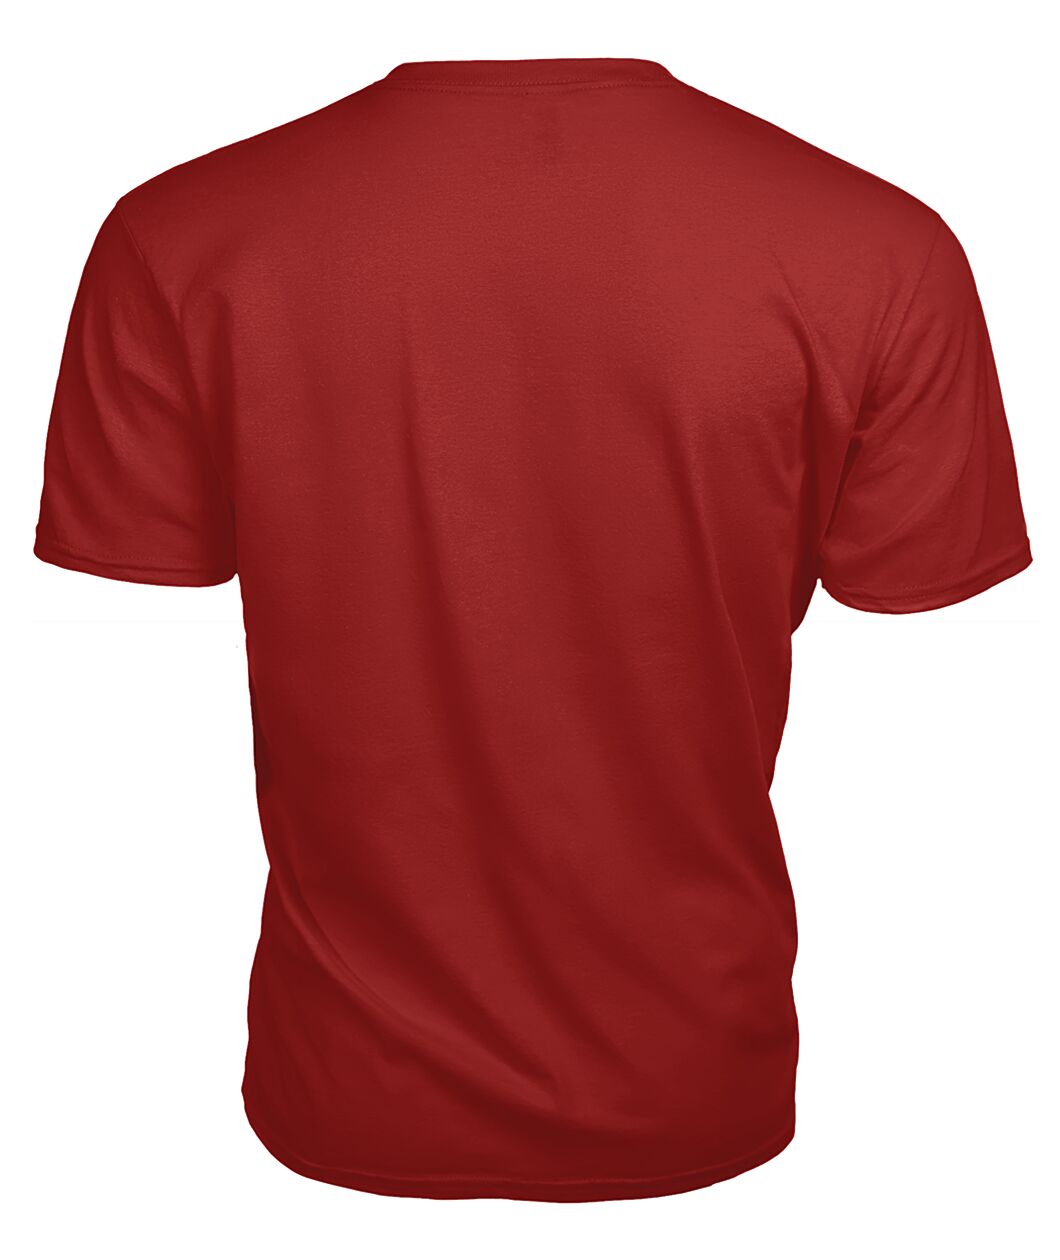 Callander Family Tartan - 2D T-shirt